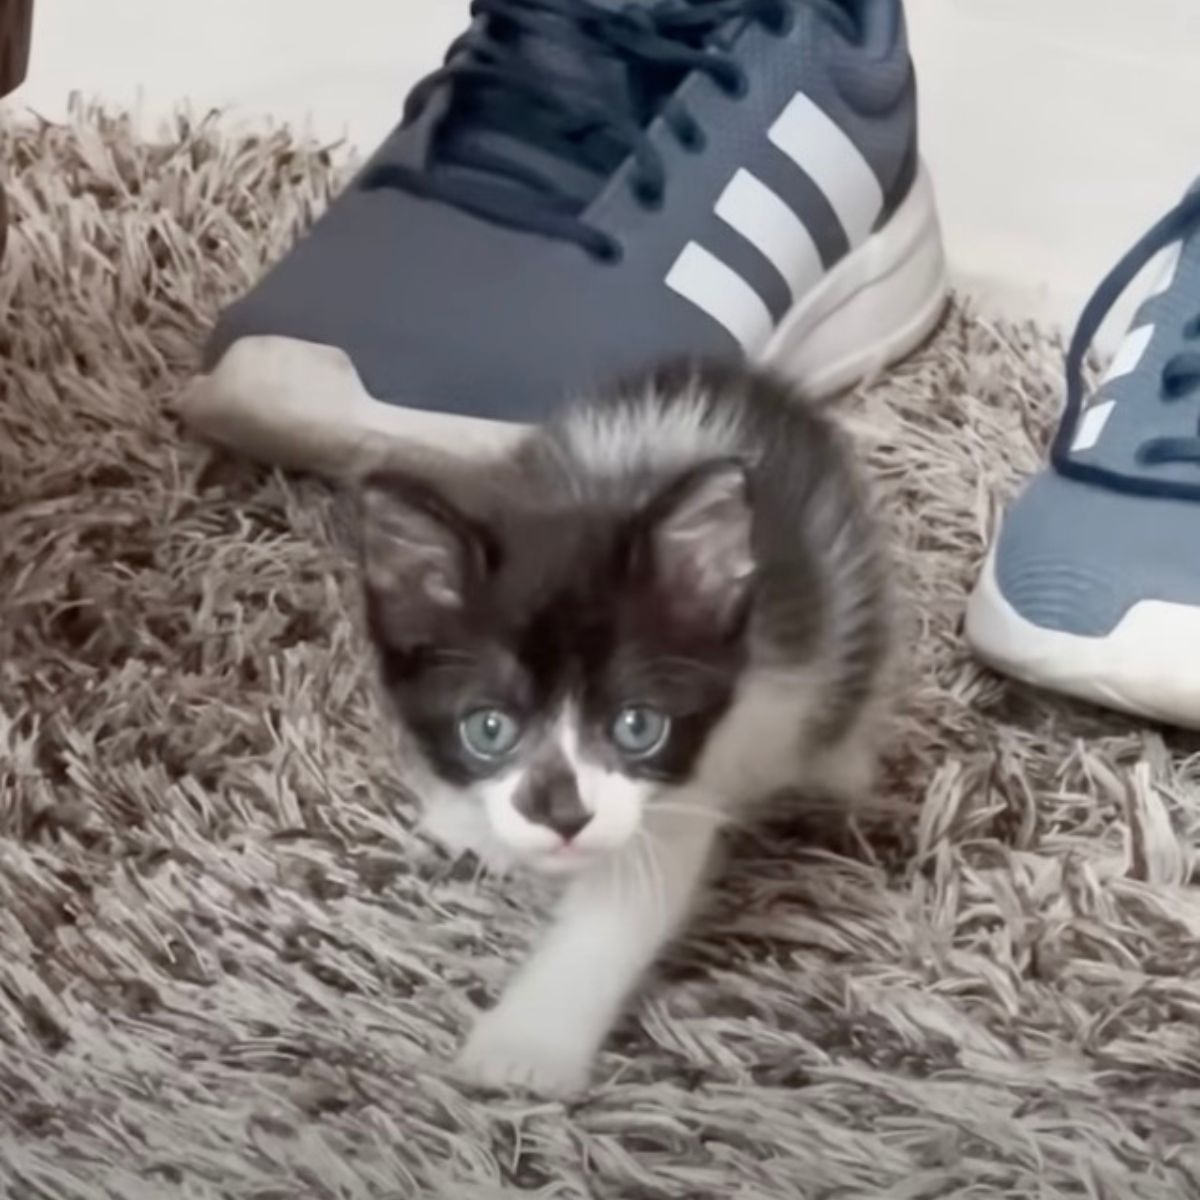 tiny kitten on carpet